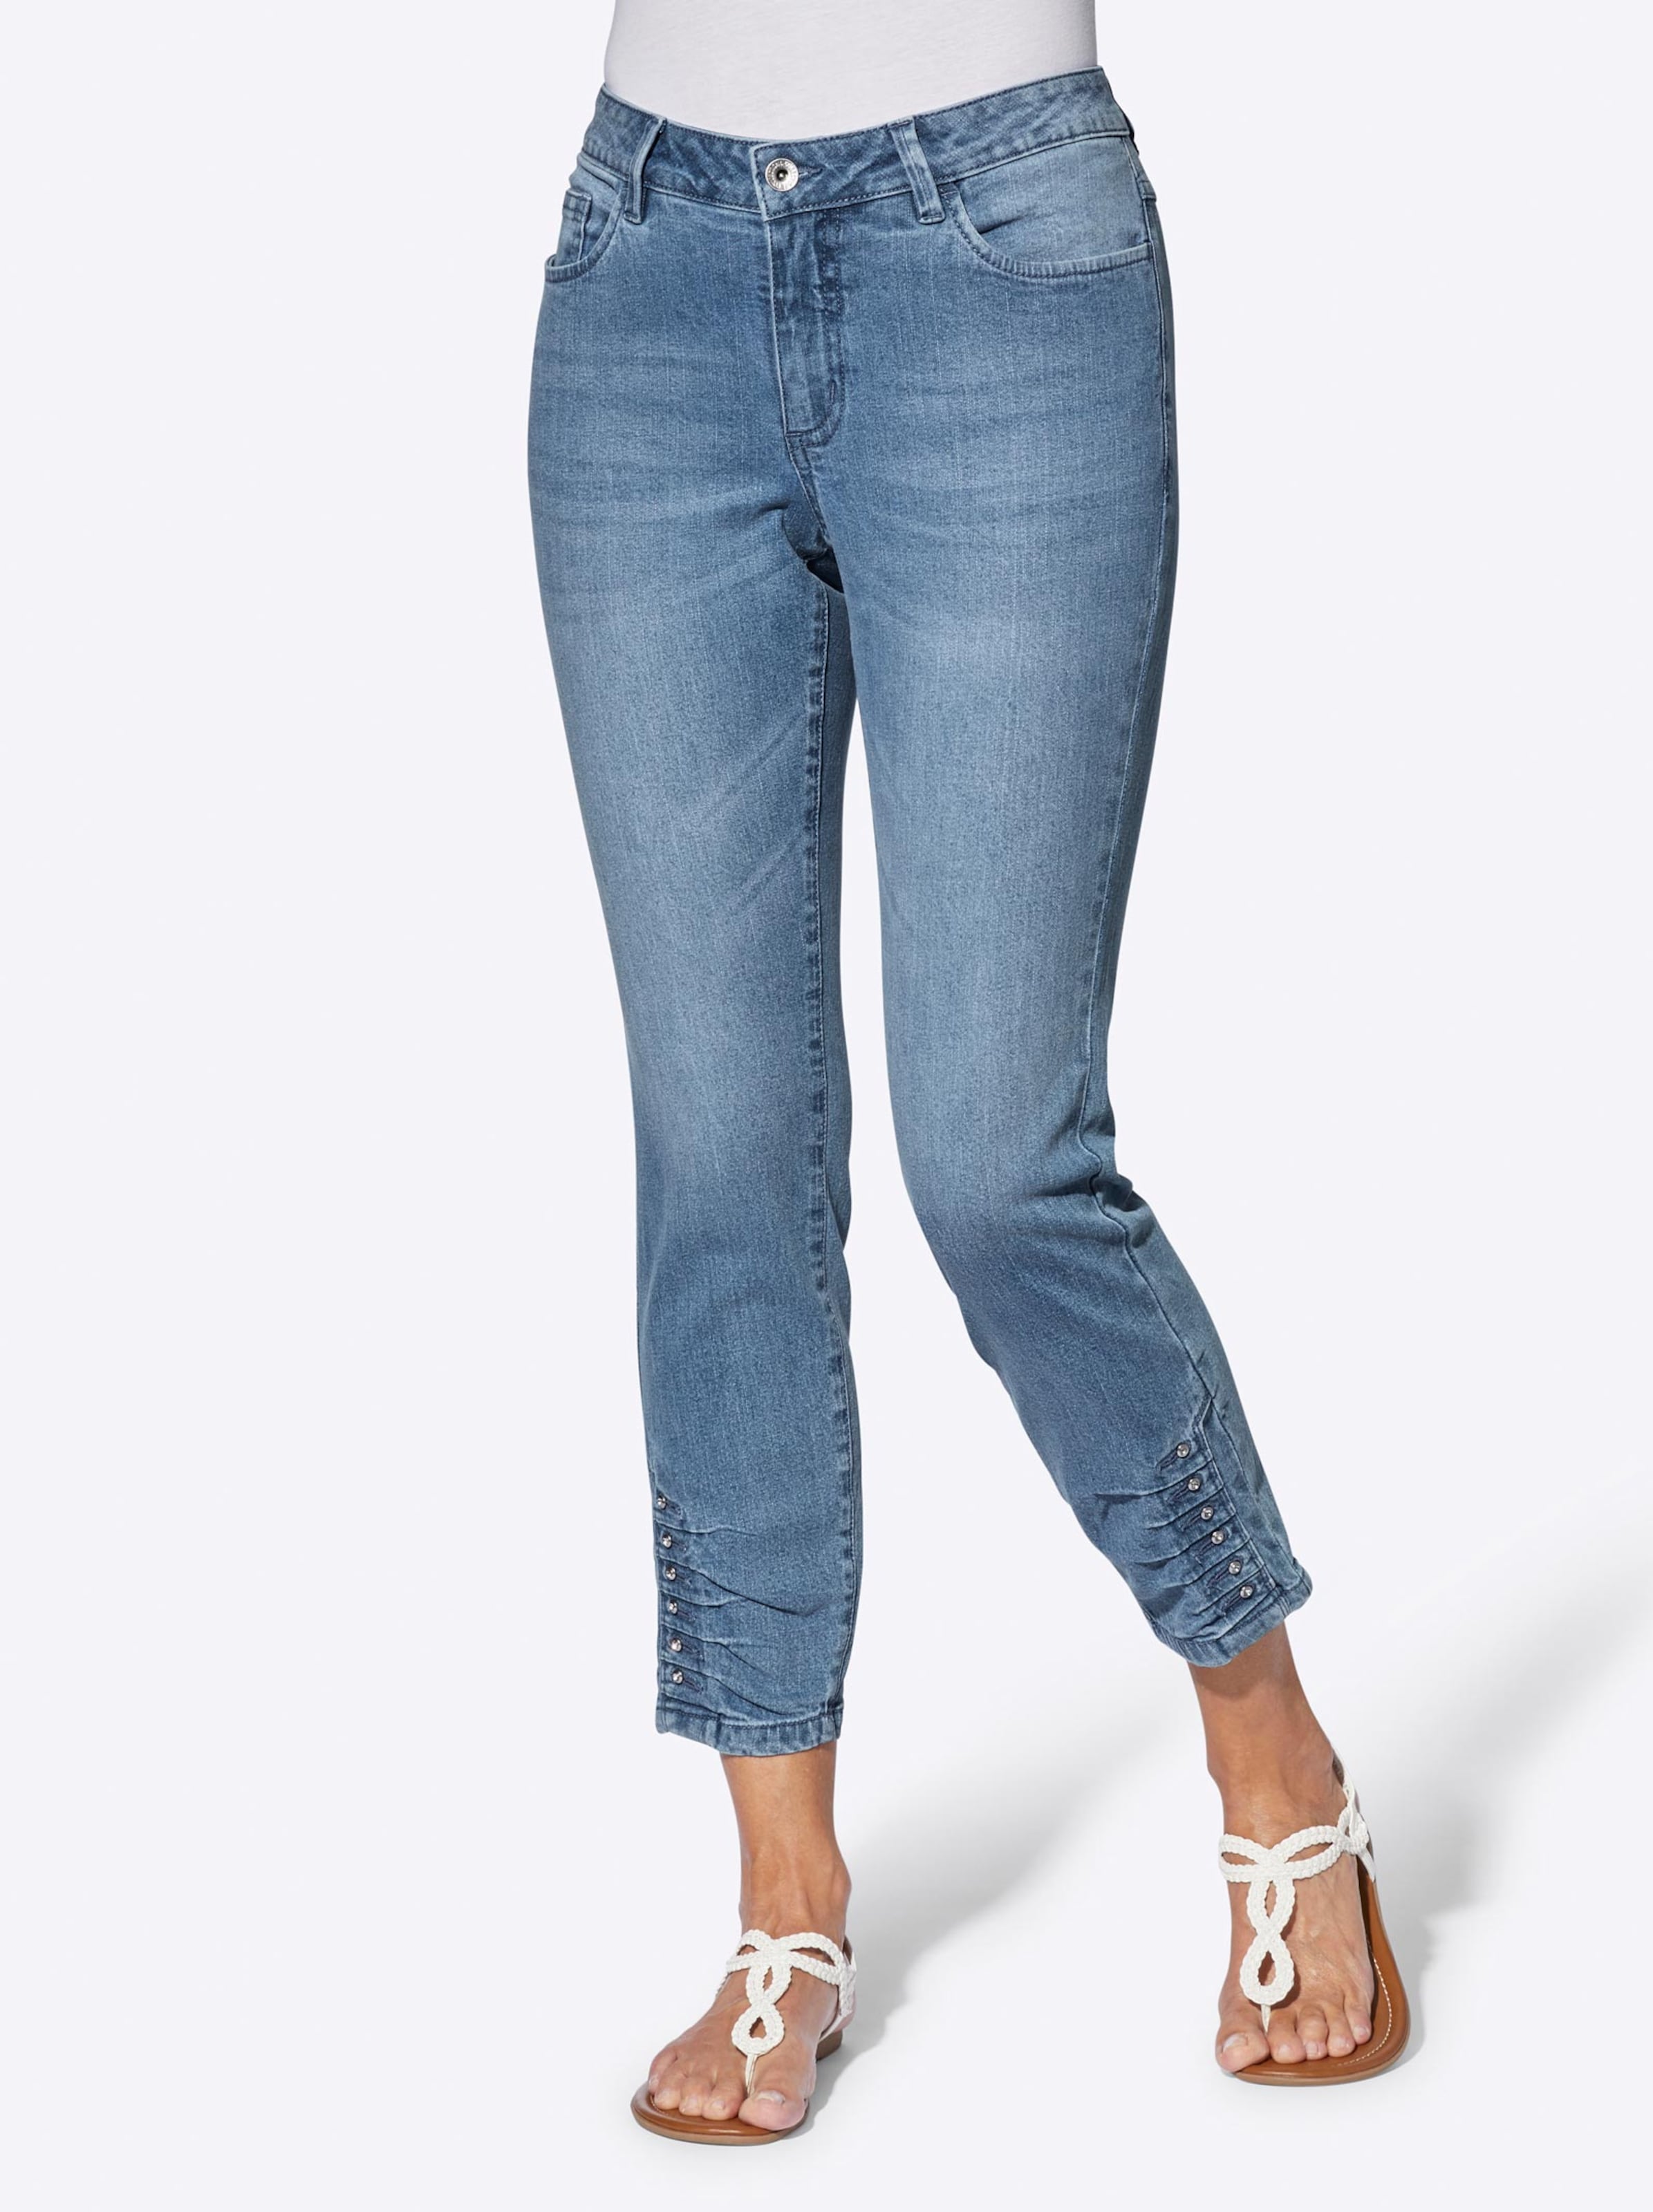 Damenmode Jeans 7/8-Jeans in blue-bleached 